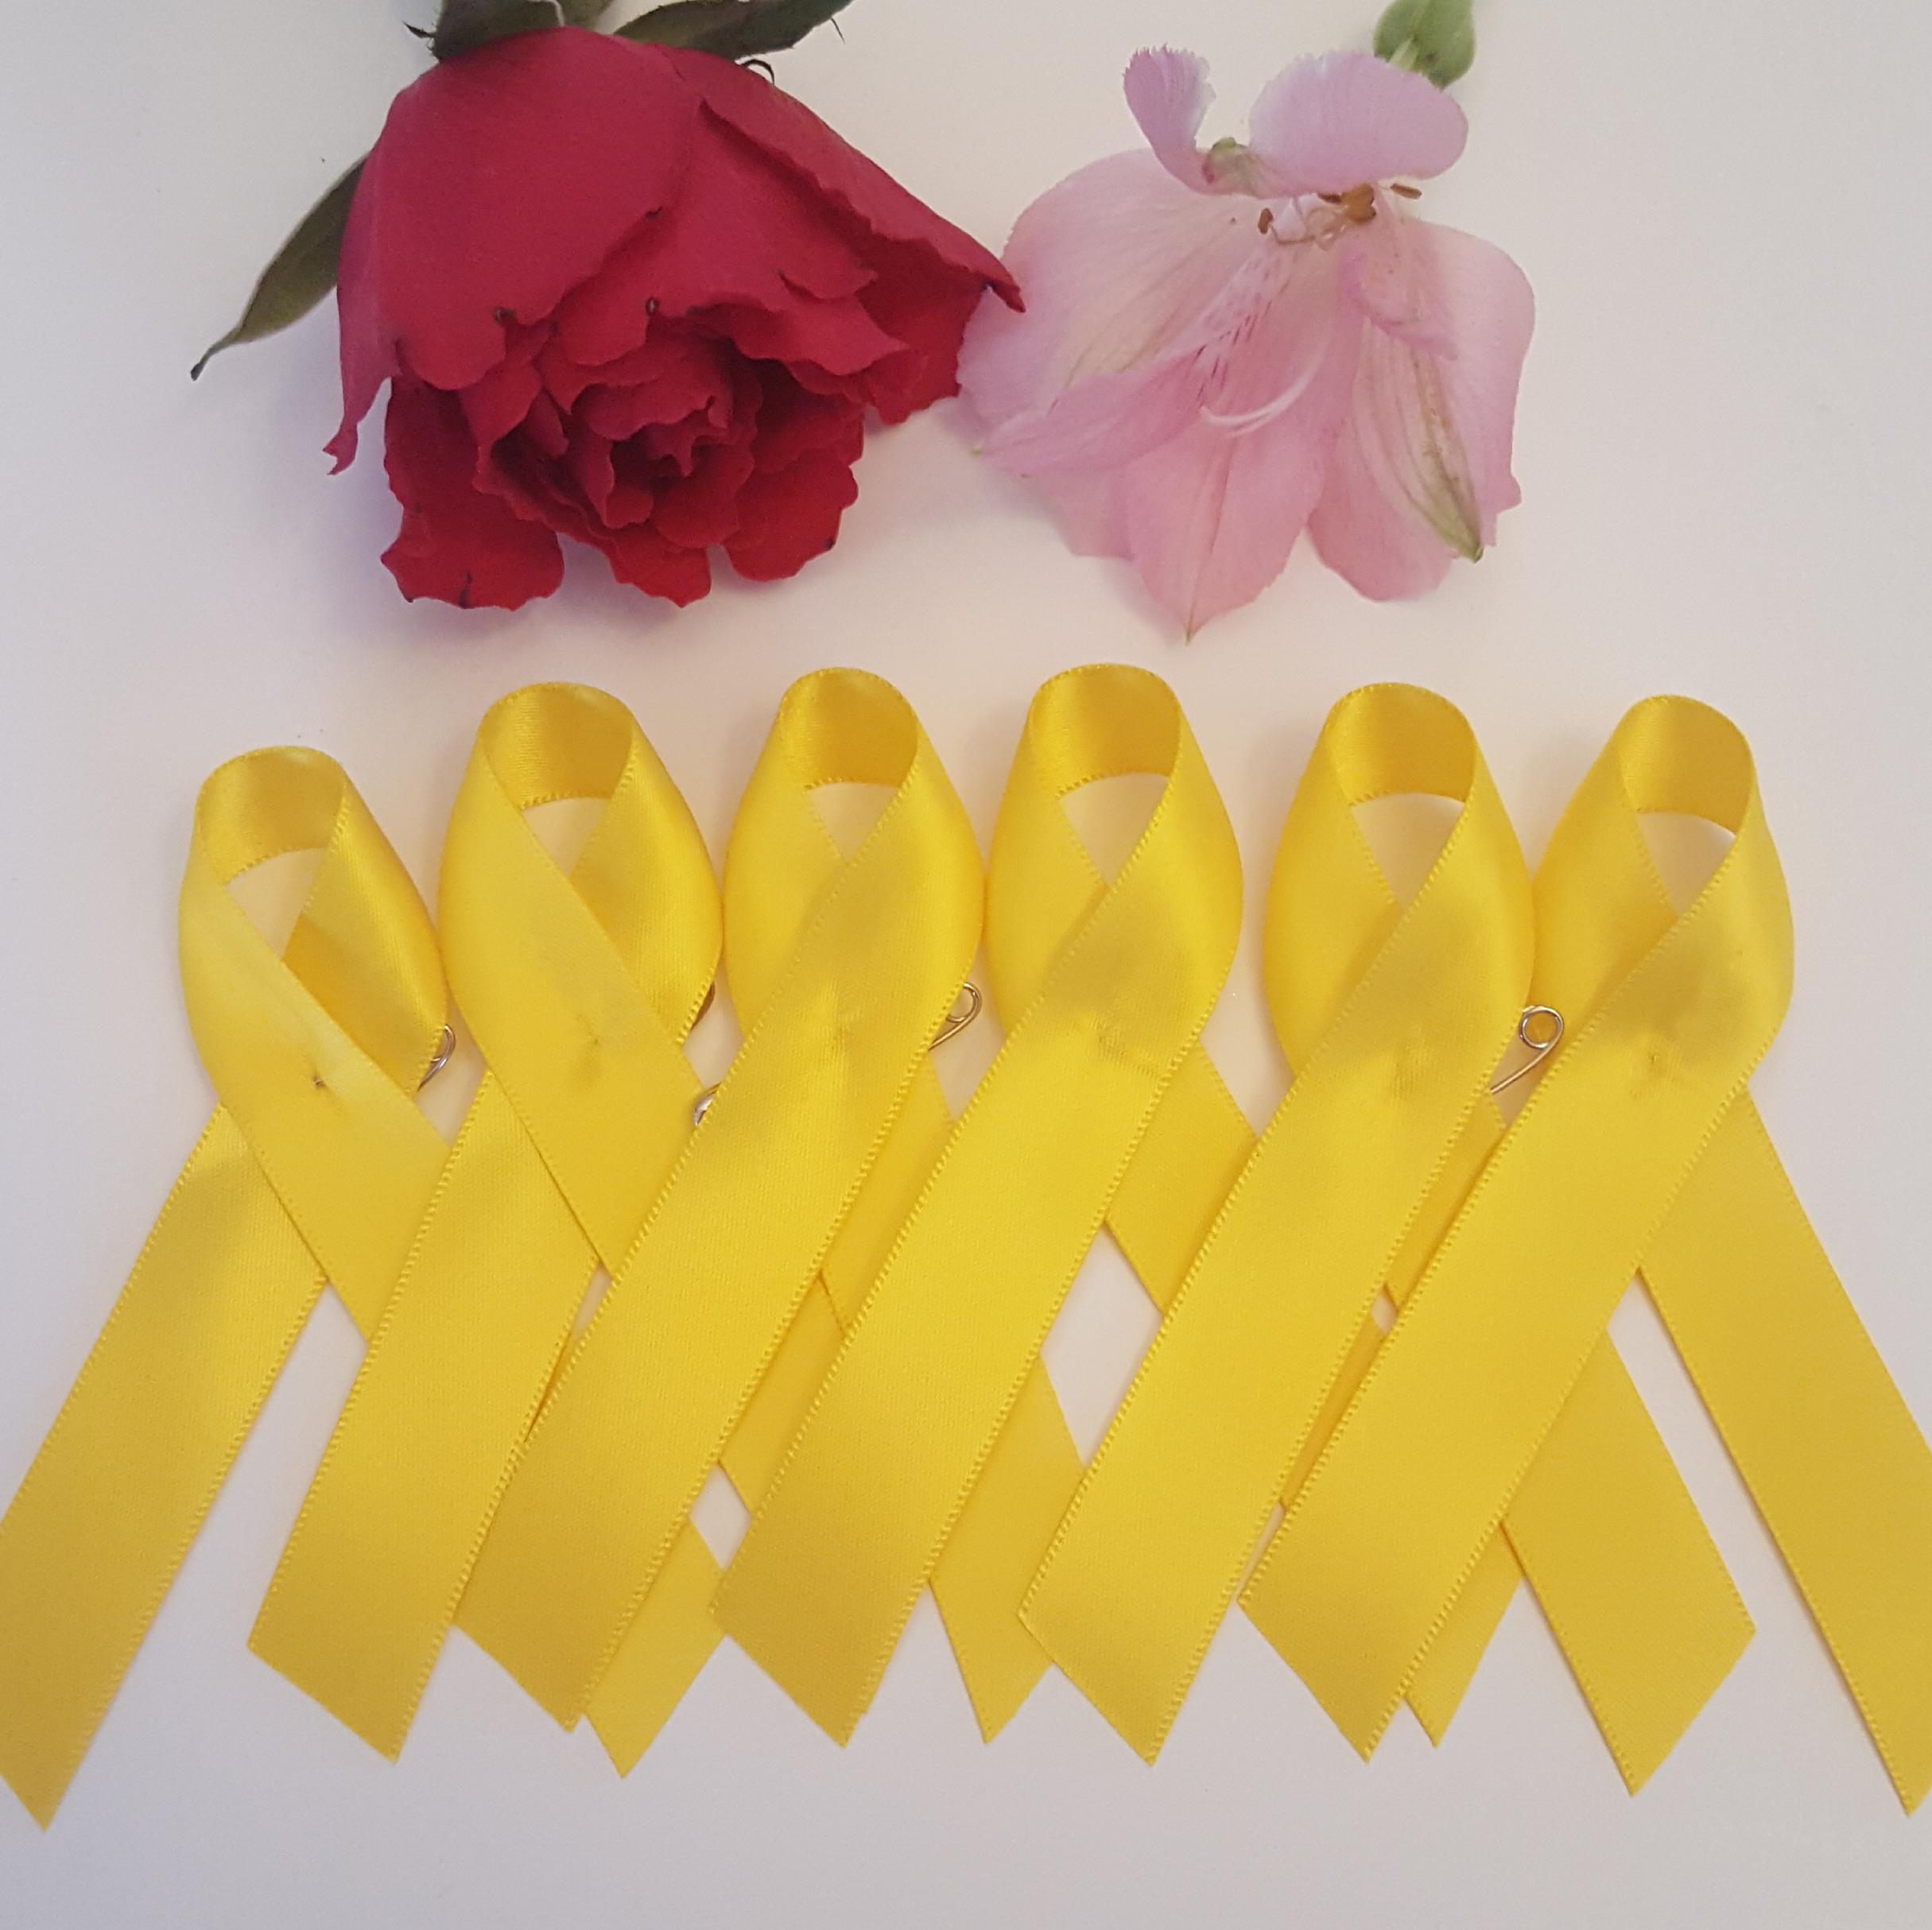 Yellow Awareness ribbons